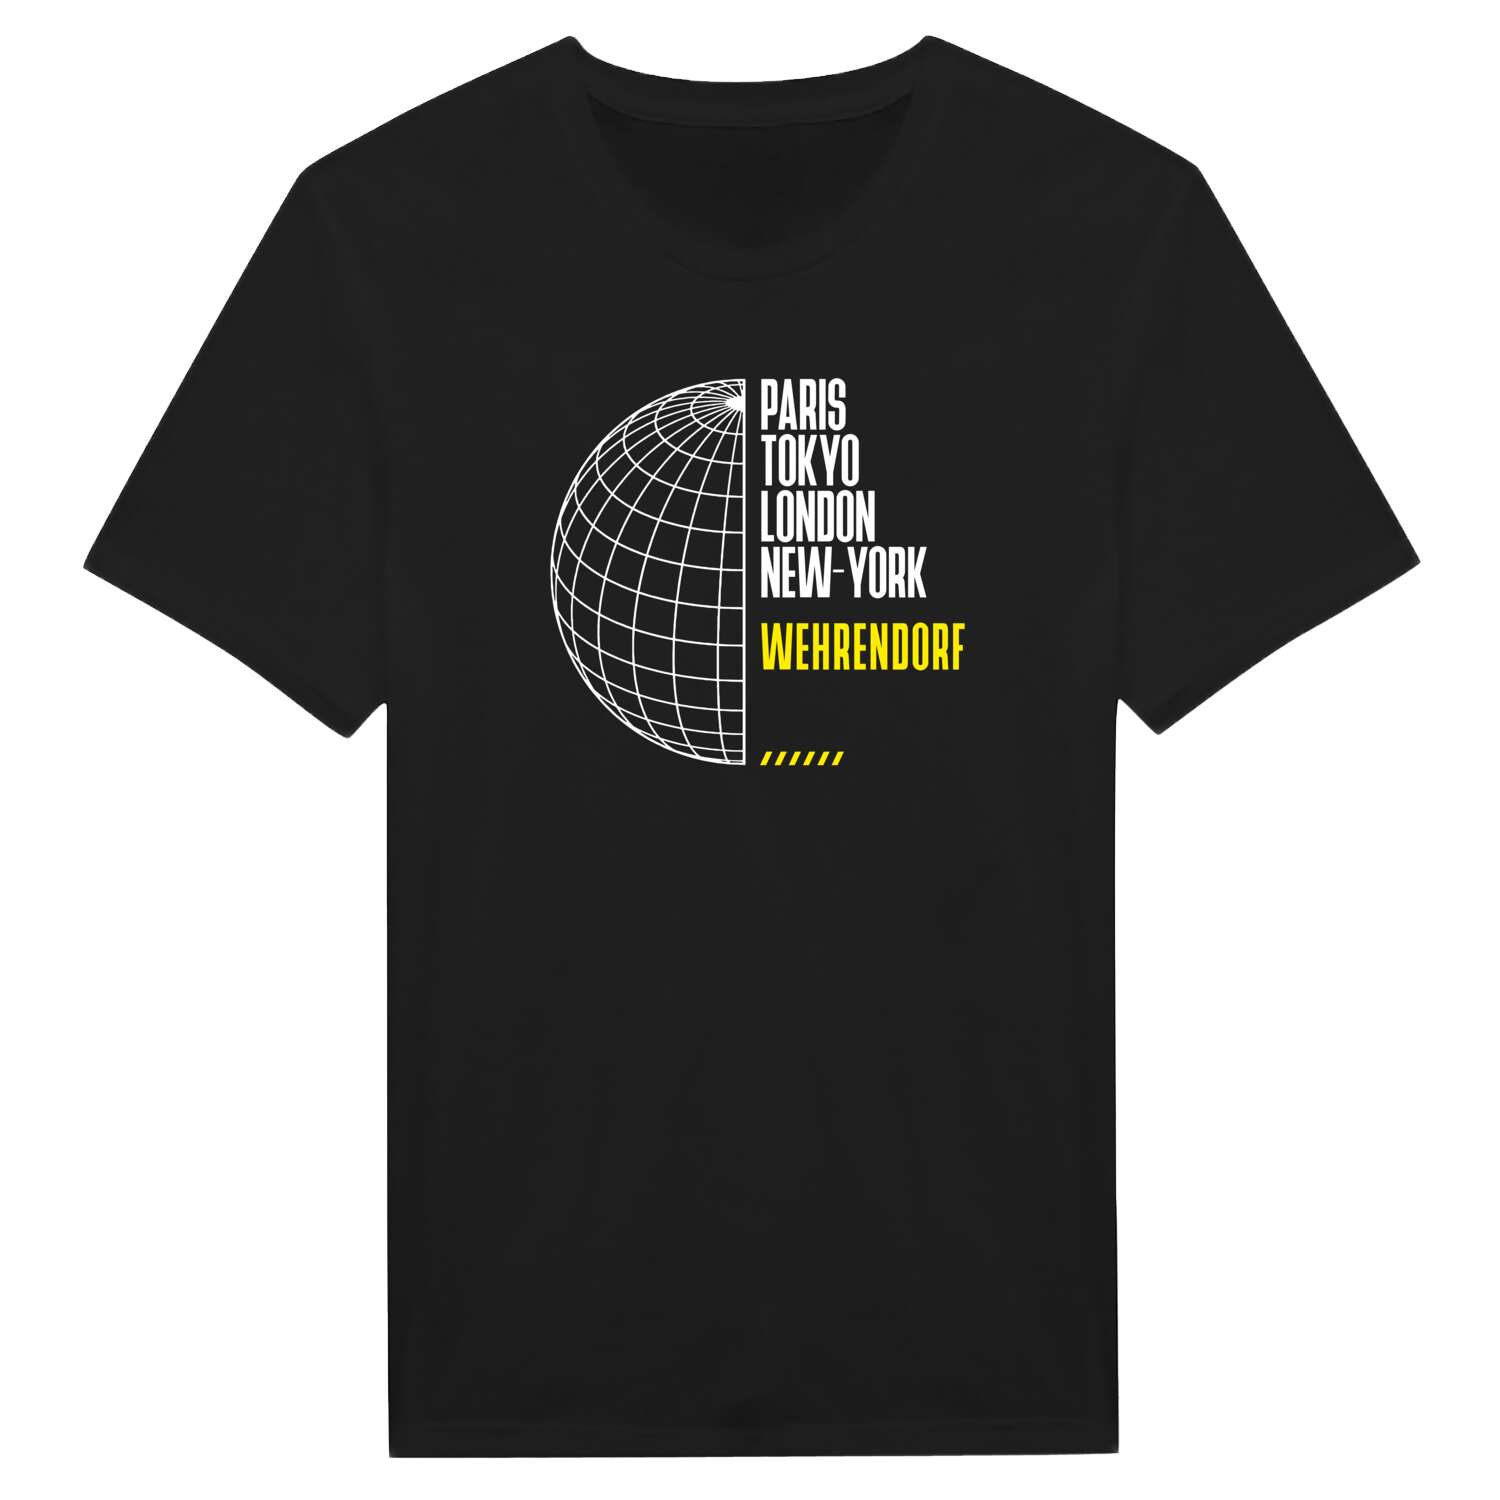 Wehrendorf T-Shirt »Paris Tokyo London«